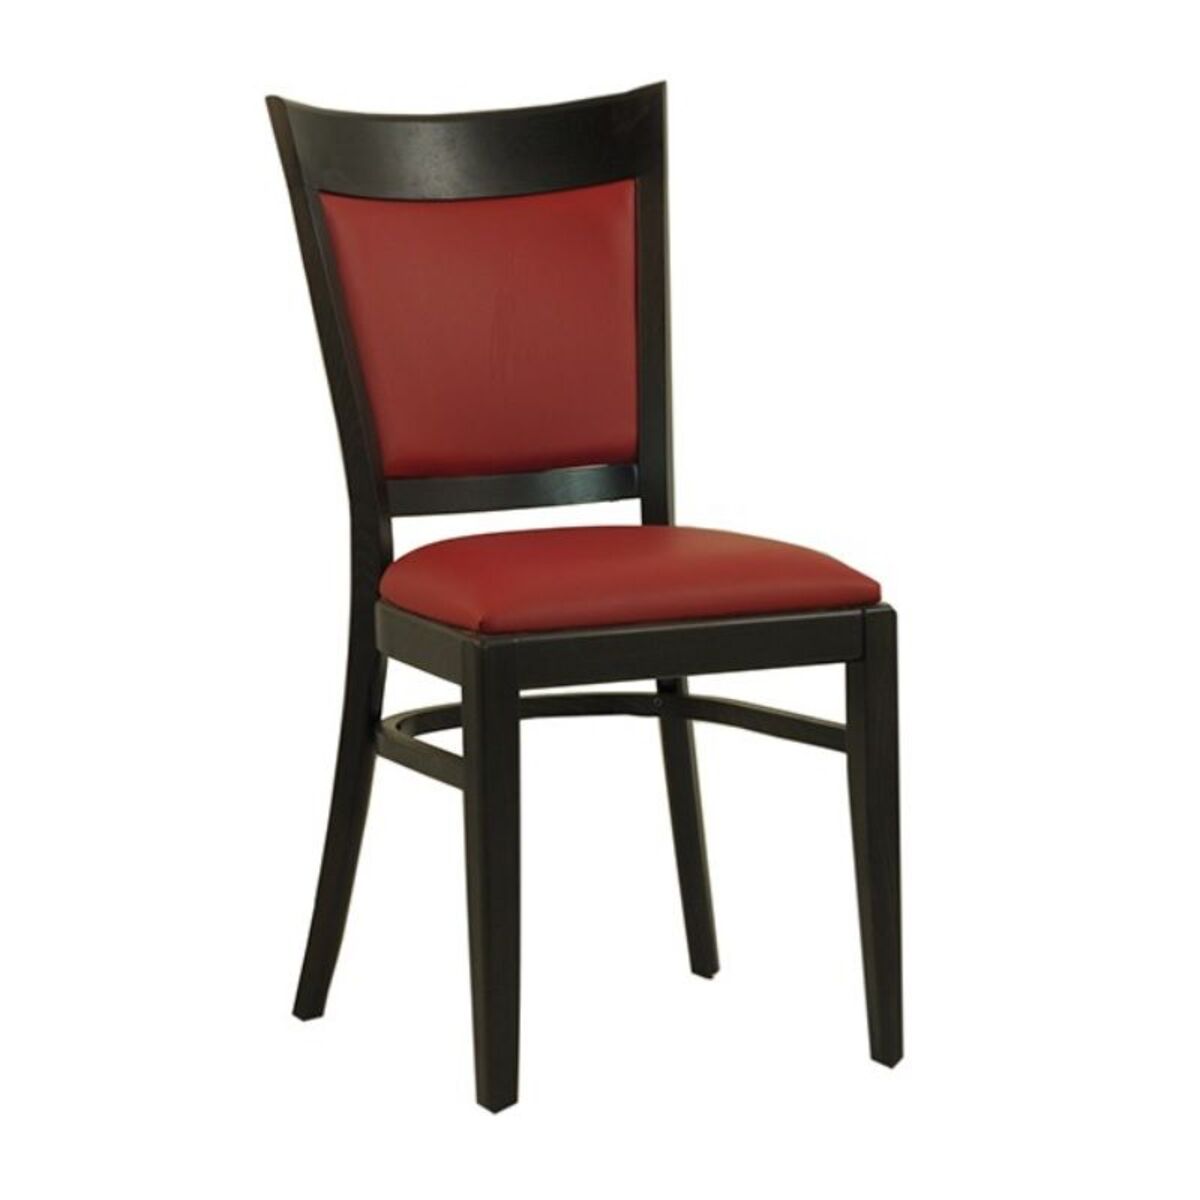 Chaise en bois avec assise et dossier rembourrés en simili cuir coloris rouge